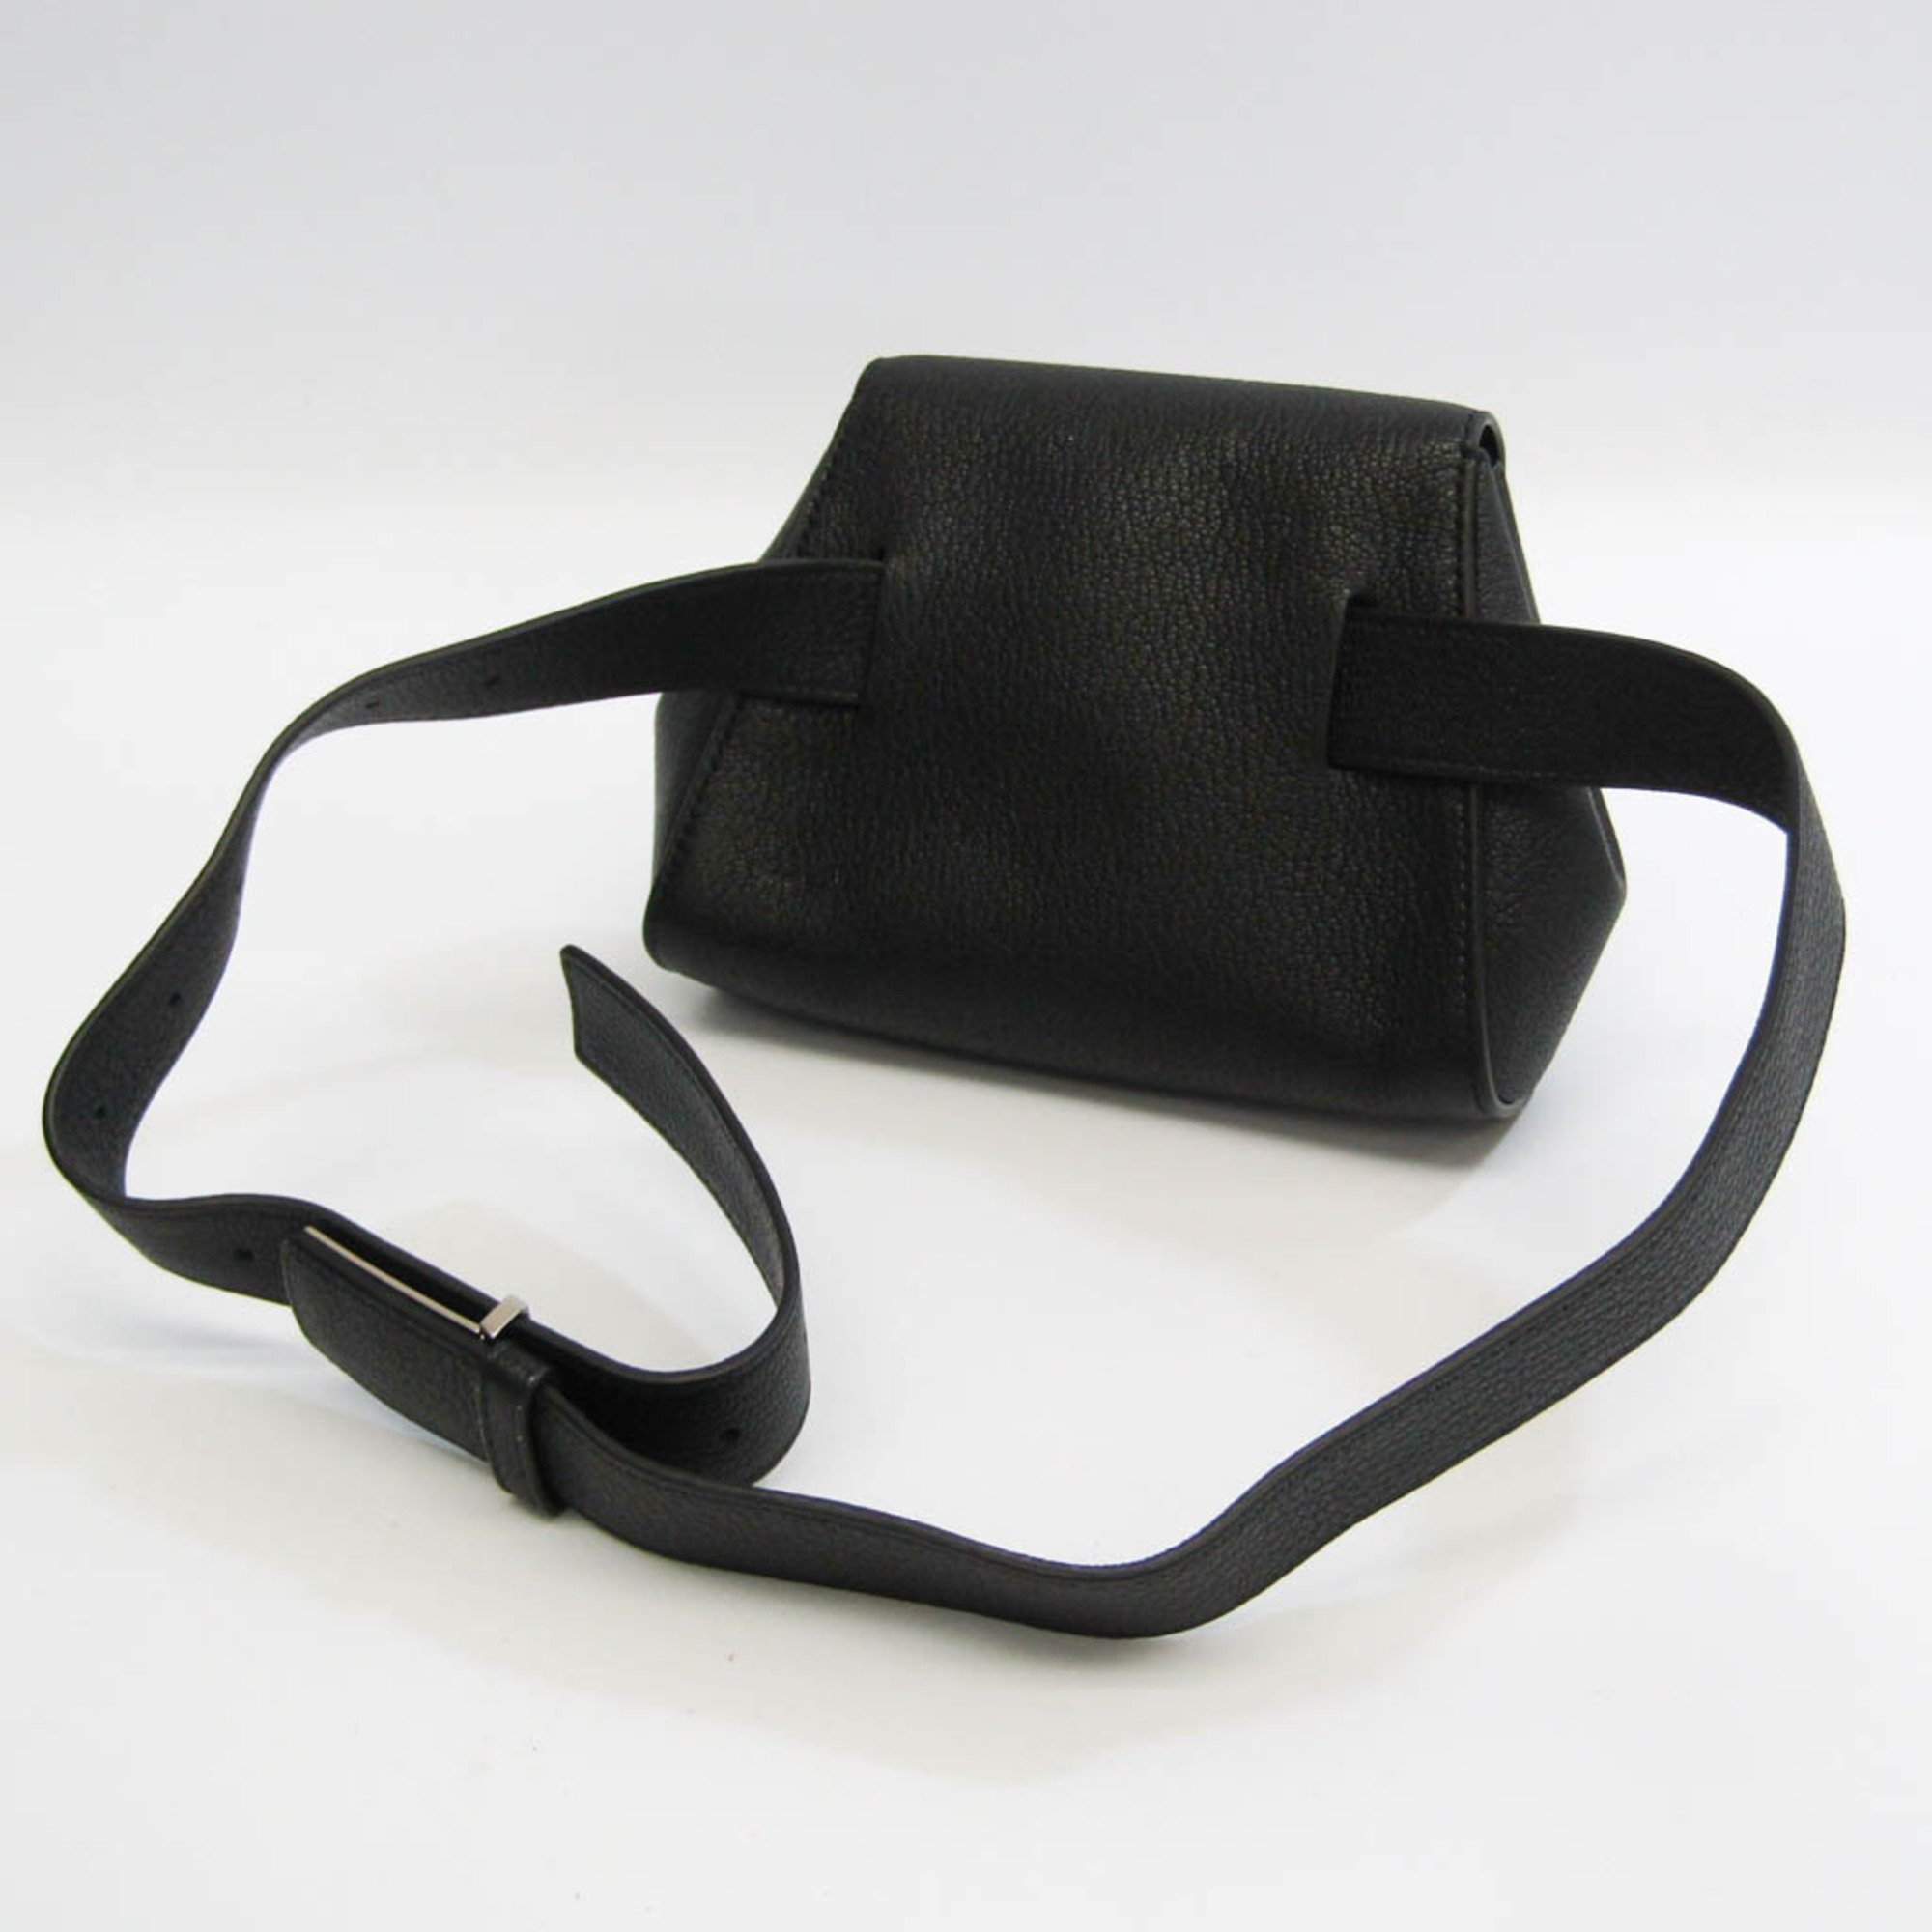 Bottega Veneta Belt Bag 631117 Women's Leather Fanny Pack Black